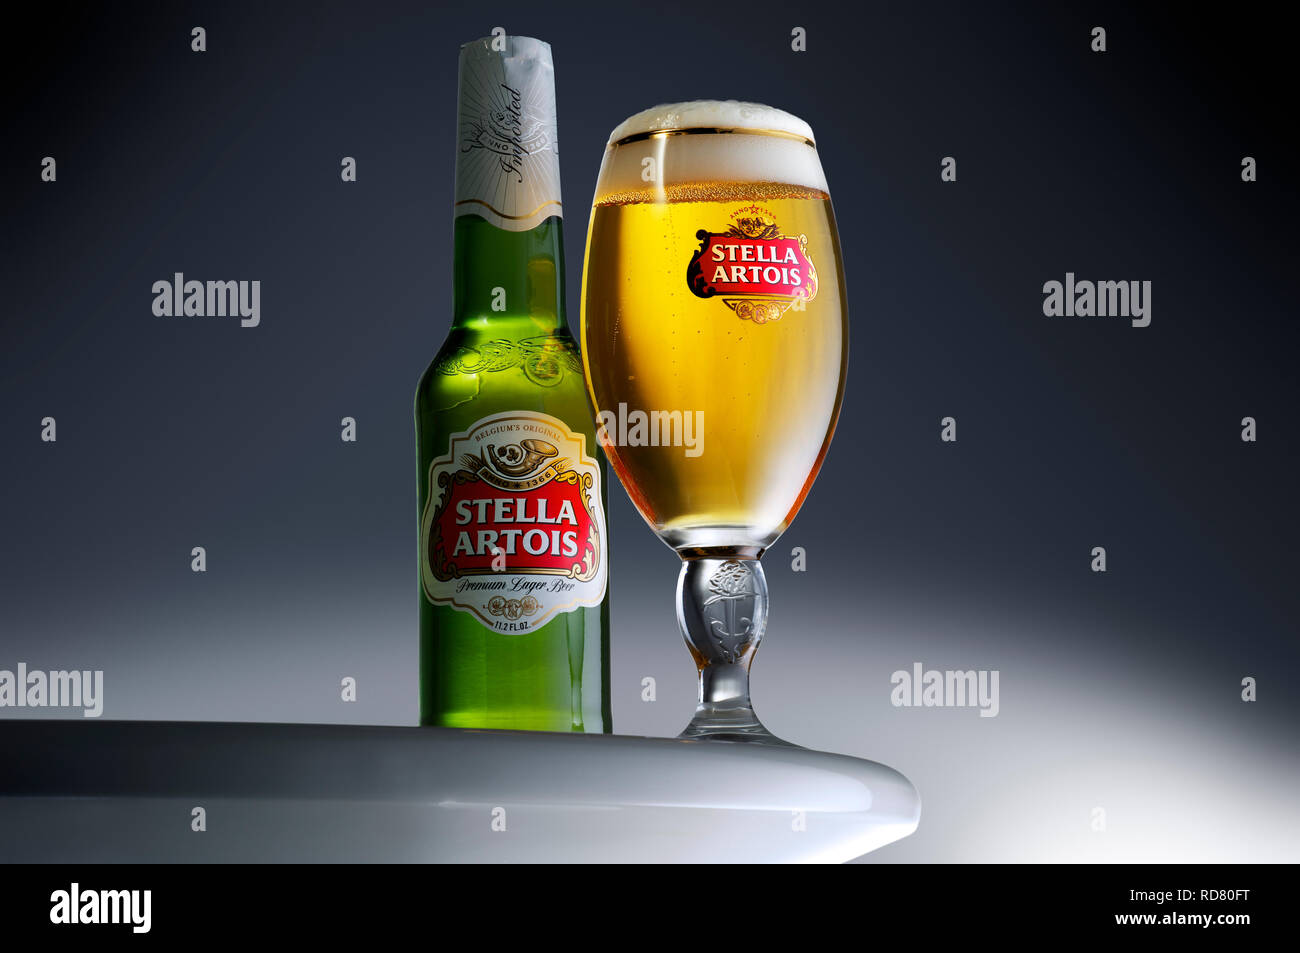 Botella de Stella Artois y vaso lleno, Foto de estudio Foto de stock